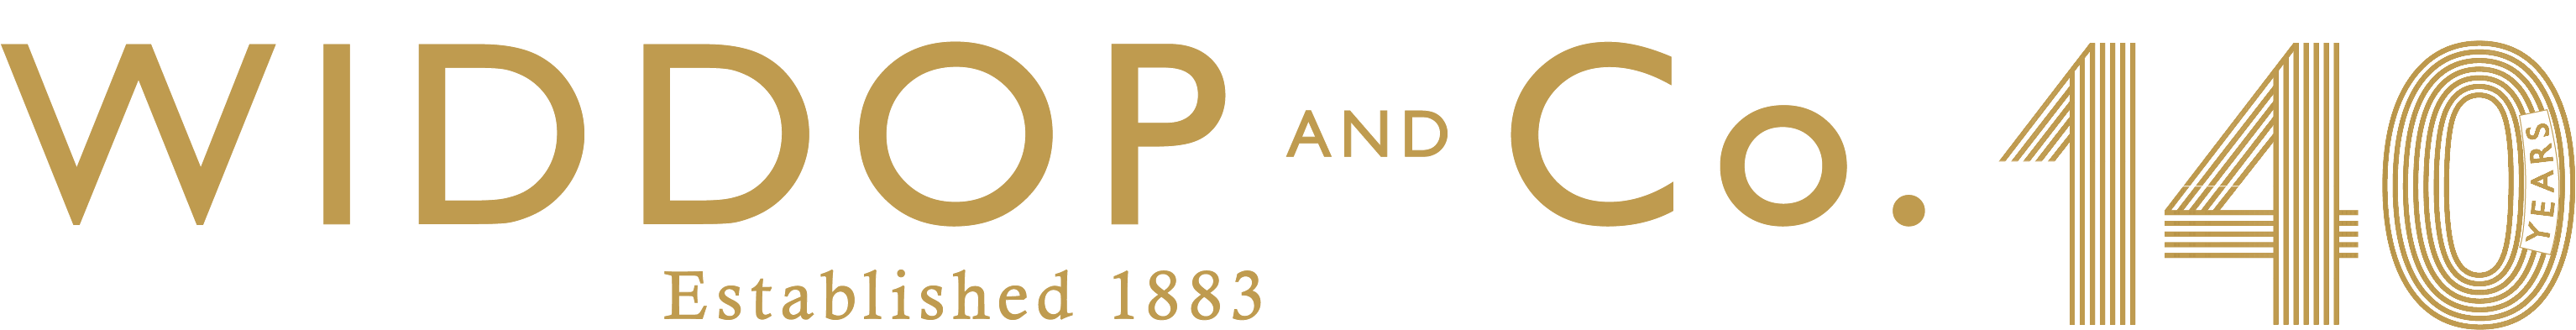 140 website logo.png